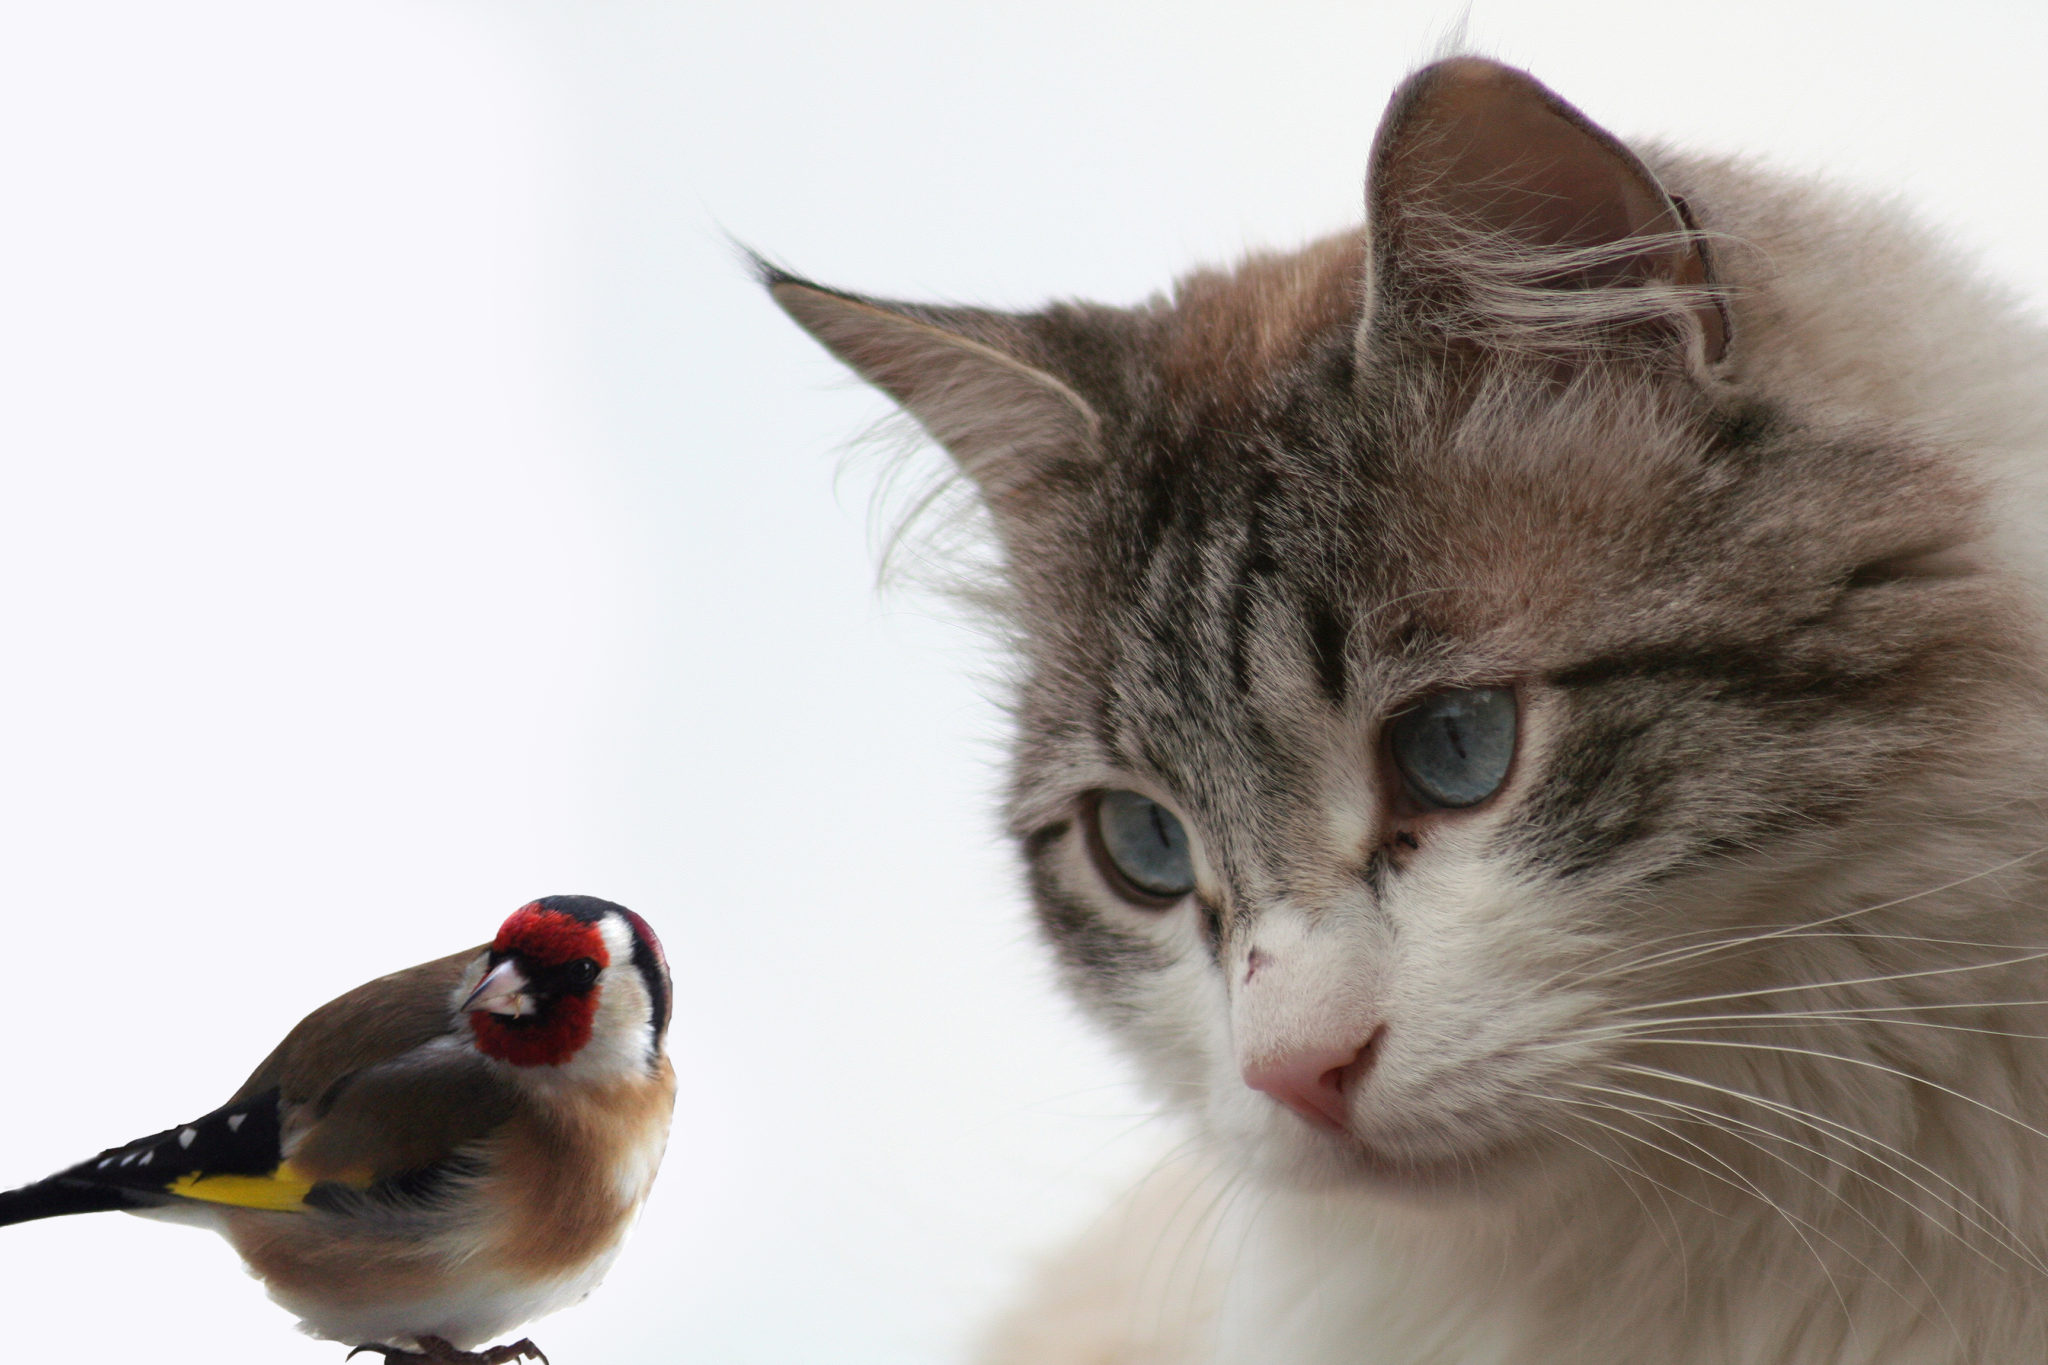 Oiseaux de bonheur. Le chat est-il un vrai prédateur pour les oiseaux ?